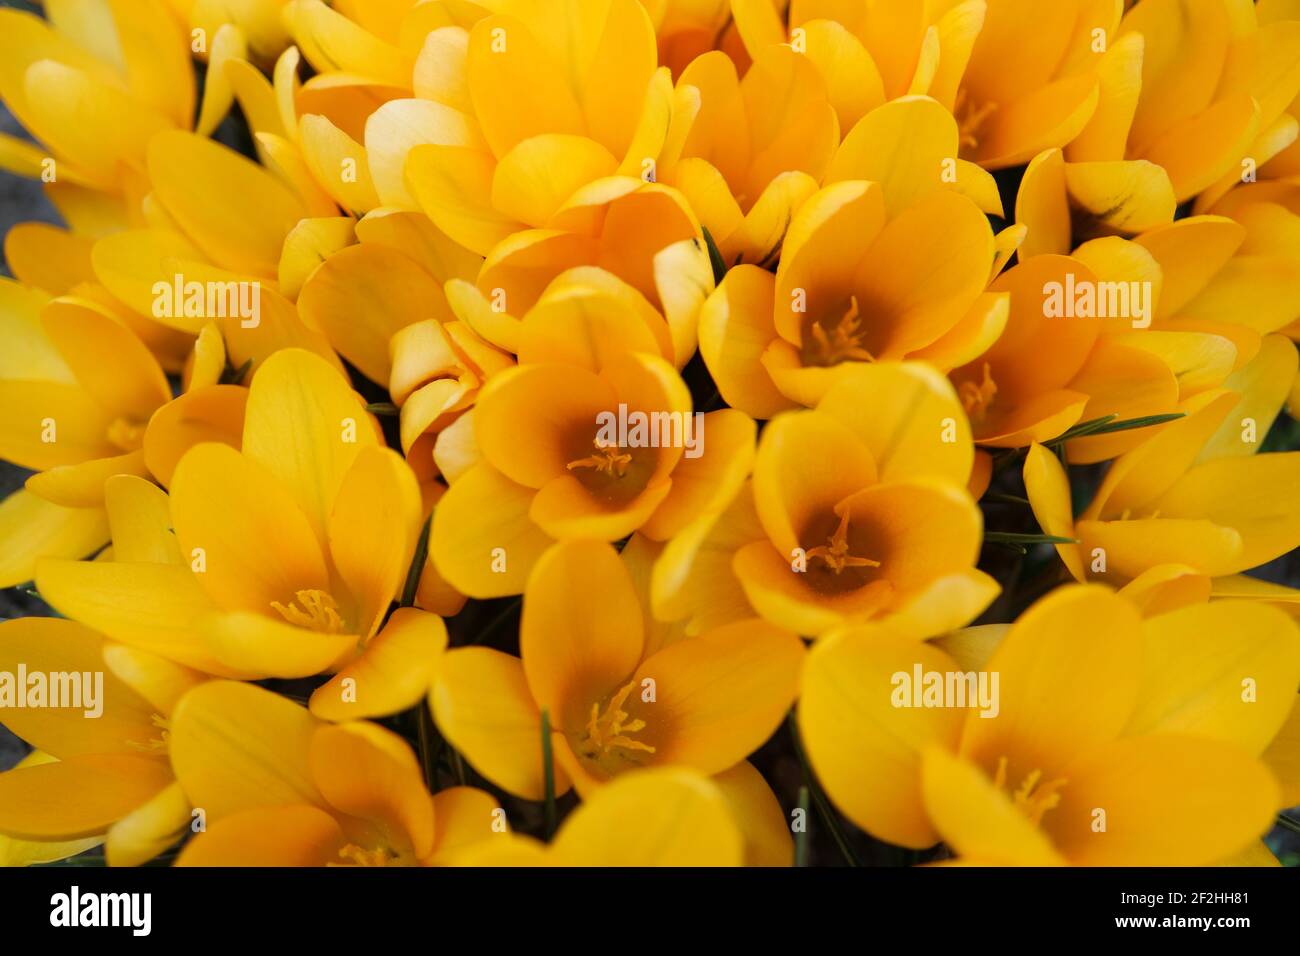 Croci gialle ocra con petali morbidi e resistenza, croci gialle in fiore nel giardino, fiori macro primavera, foto floreale, macro pho Foto Stock